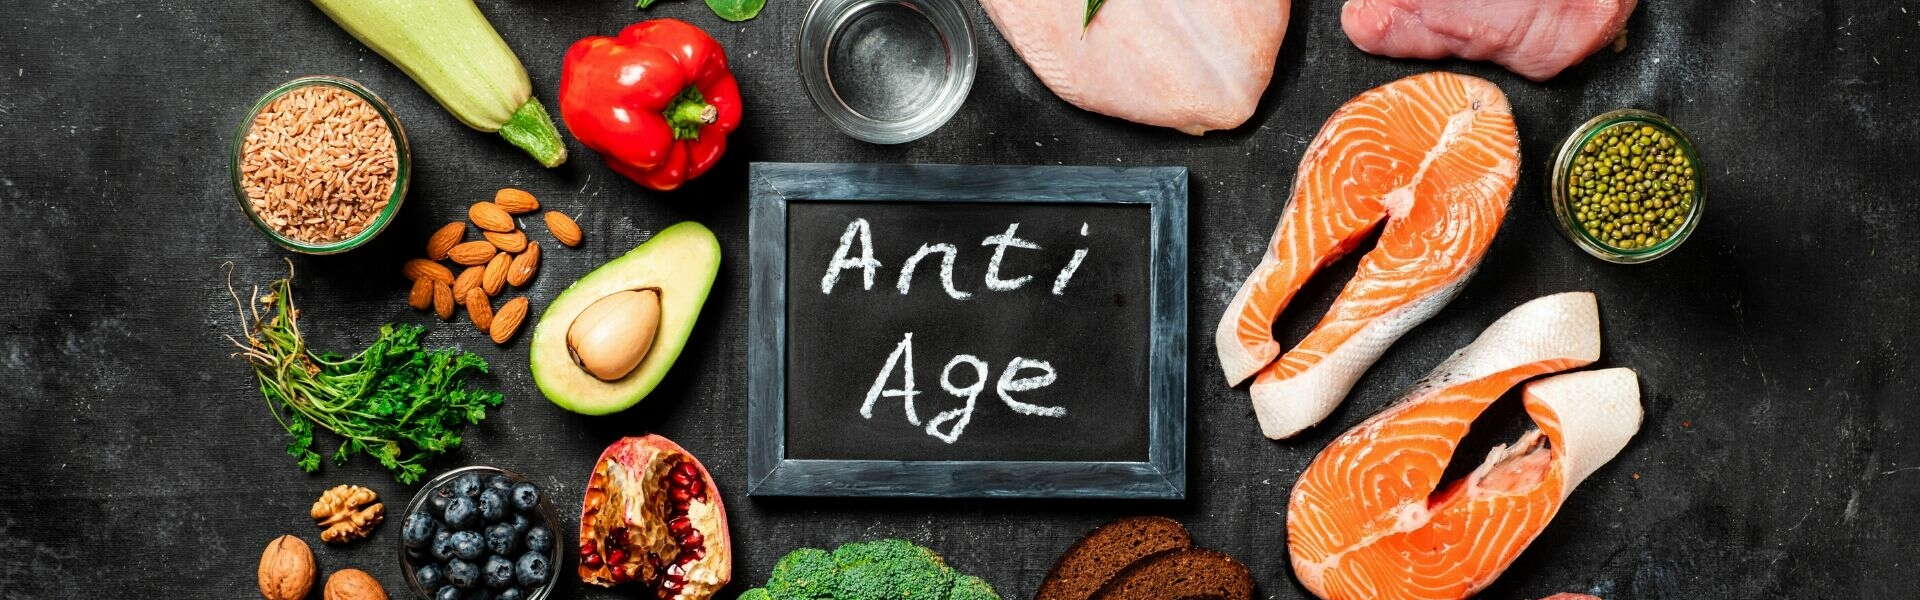 Alimenti Anti-age | I cibi che rallentano l'invecchiamento